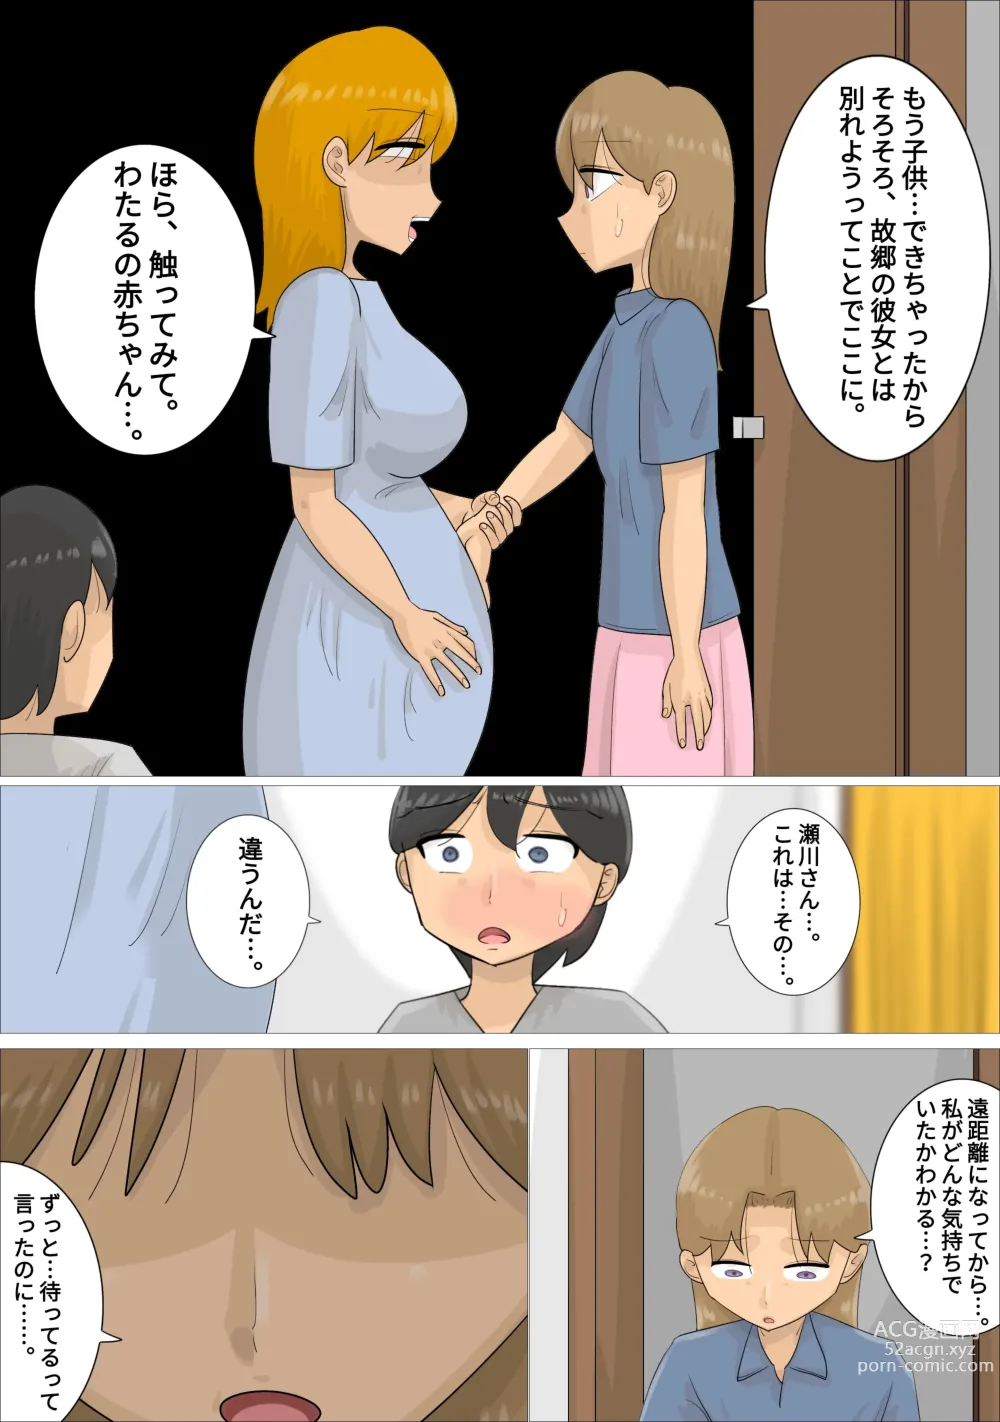 Page 38 of doujinshi Enkyori Renai Chuu ni Dokushin Oba-san o Ninshin sasete shimatta.